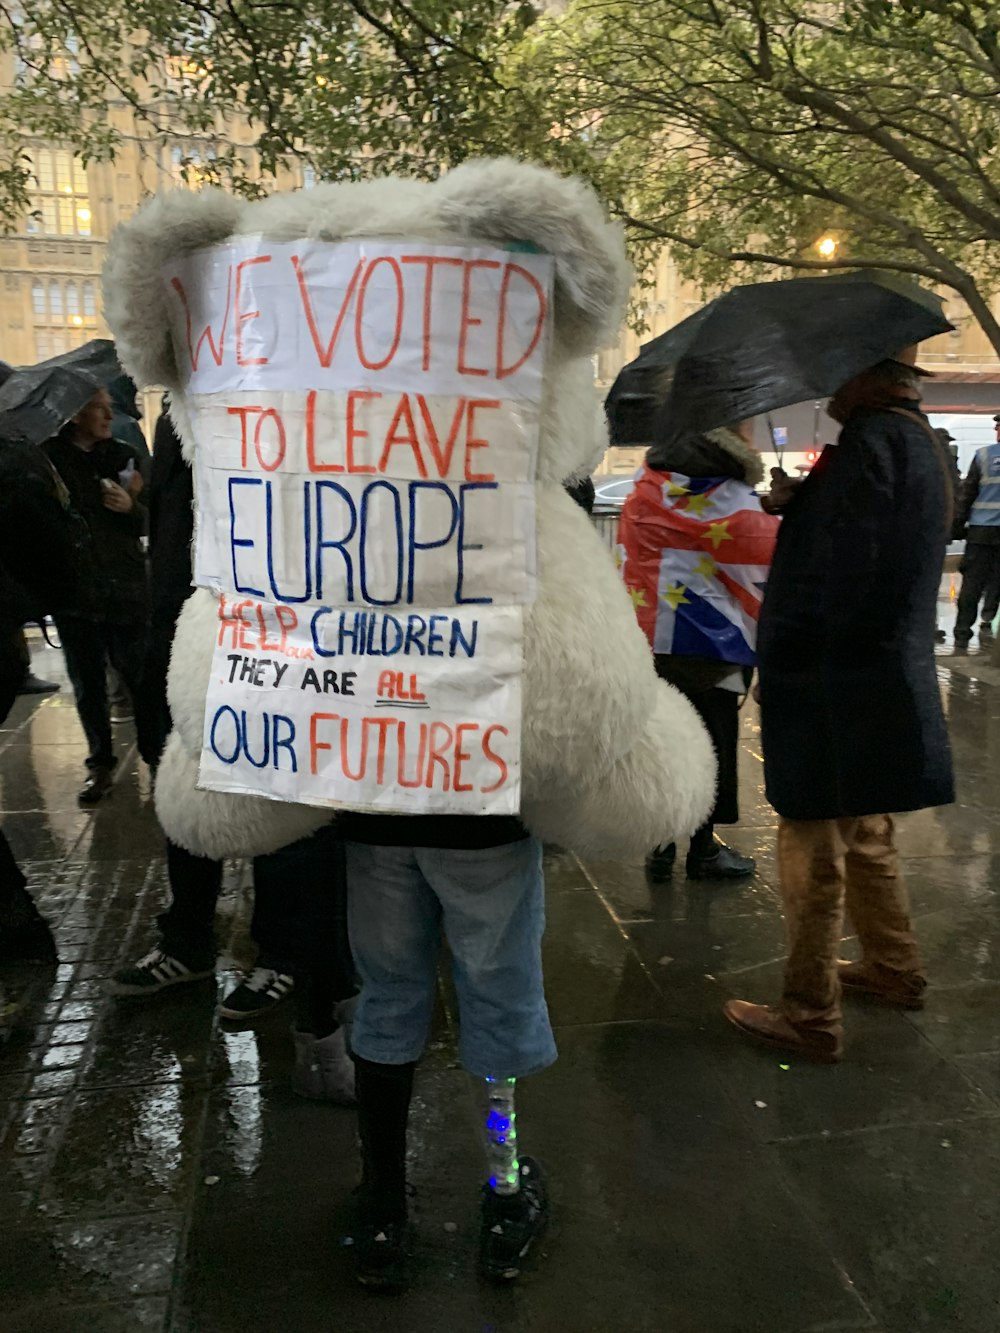 Person, die "Wir haben für den Austritt aus Europa" gestimmt